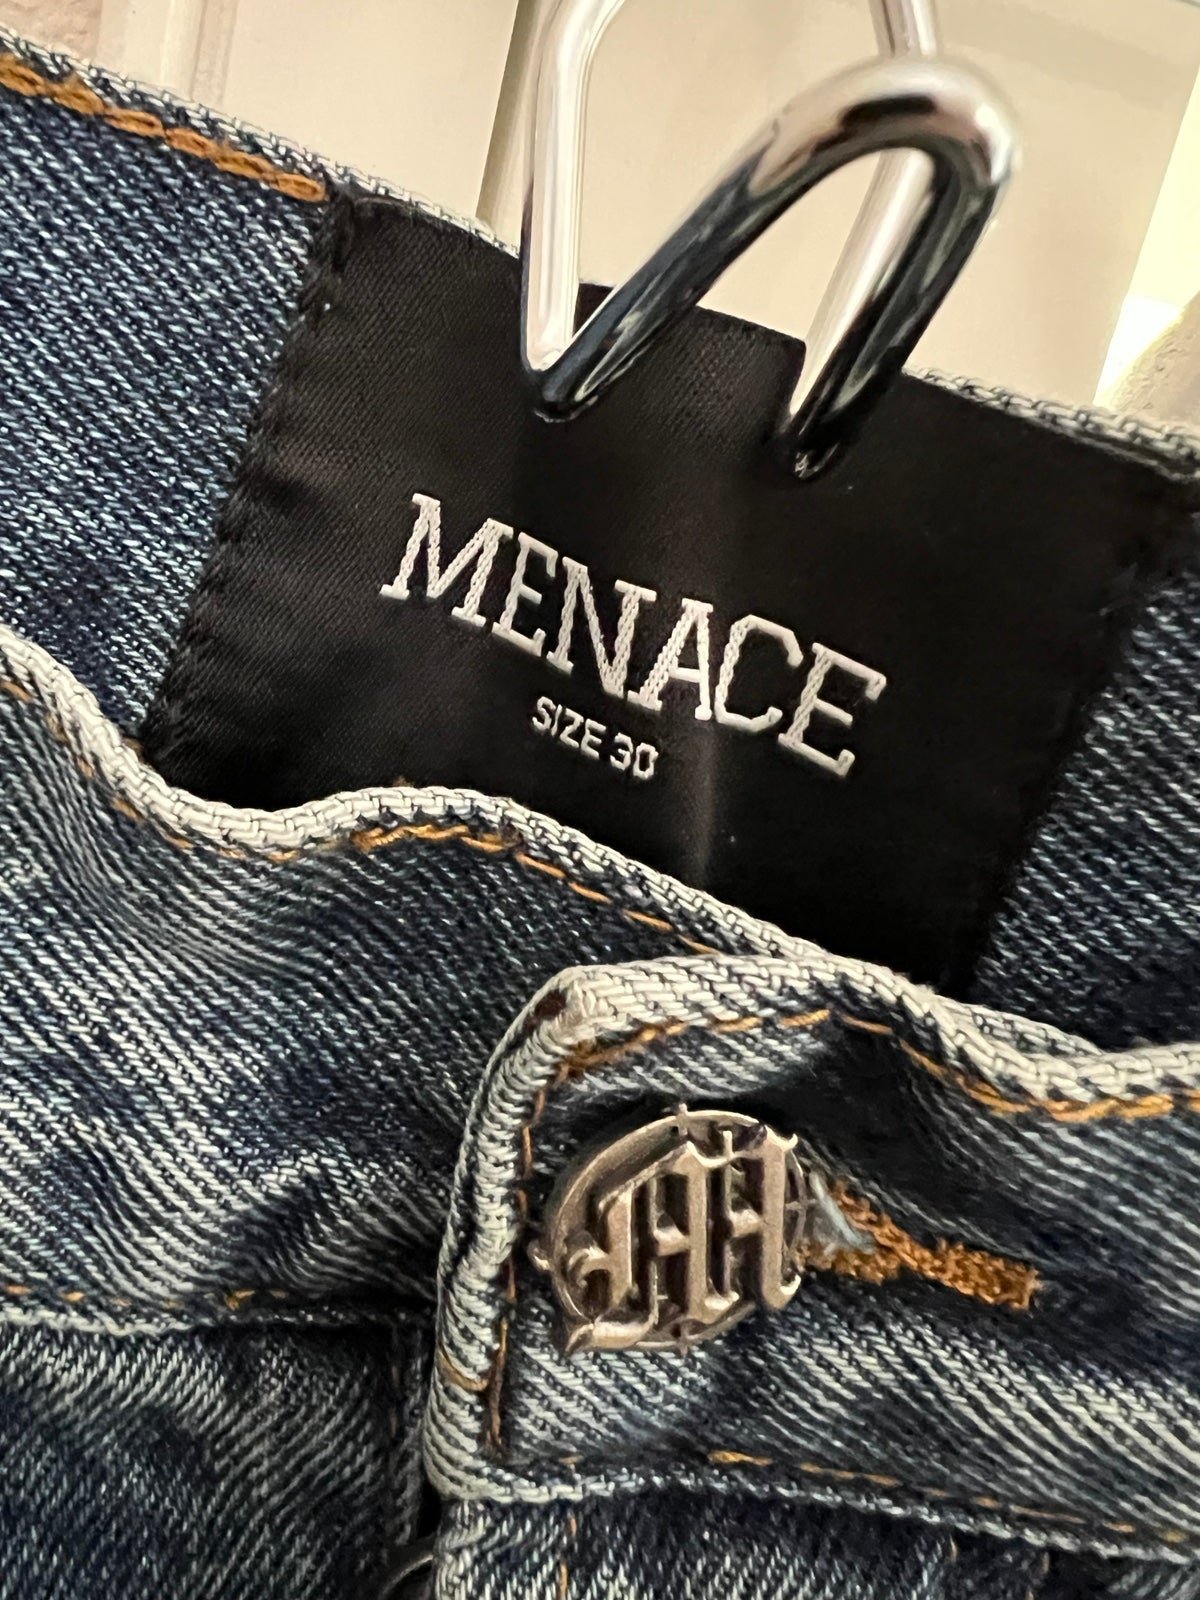 Simple Menace Los Angeles Denim Jeans NWOT lQnzhwlXs Fashion